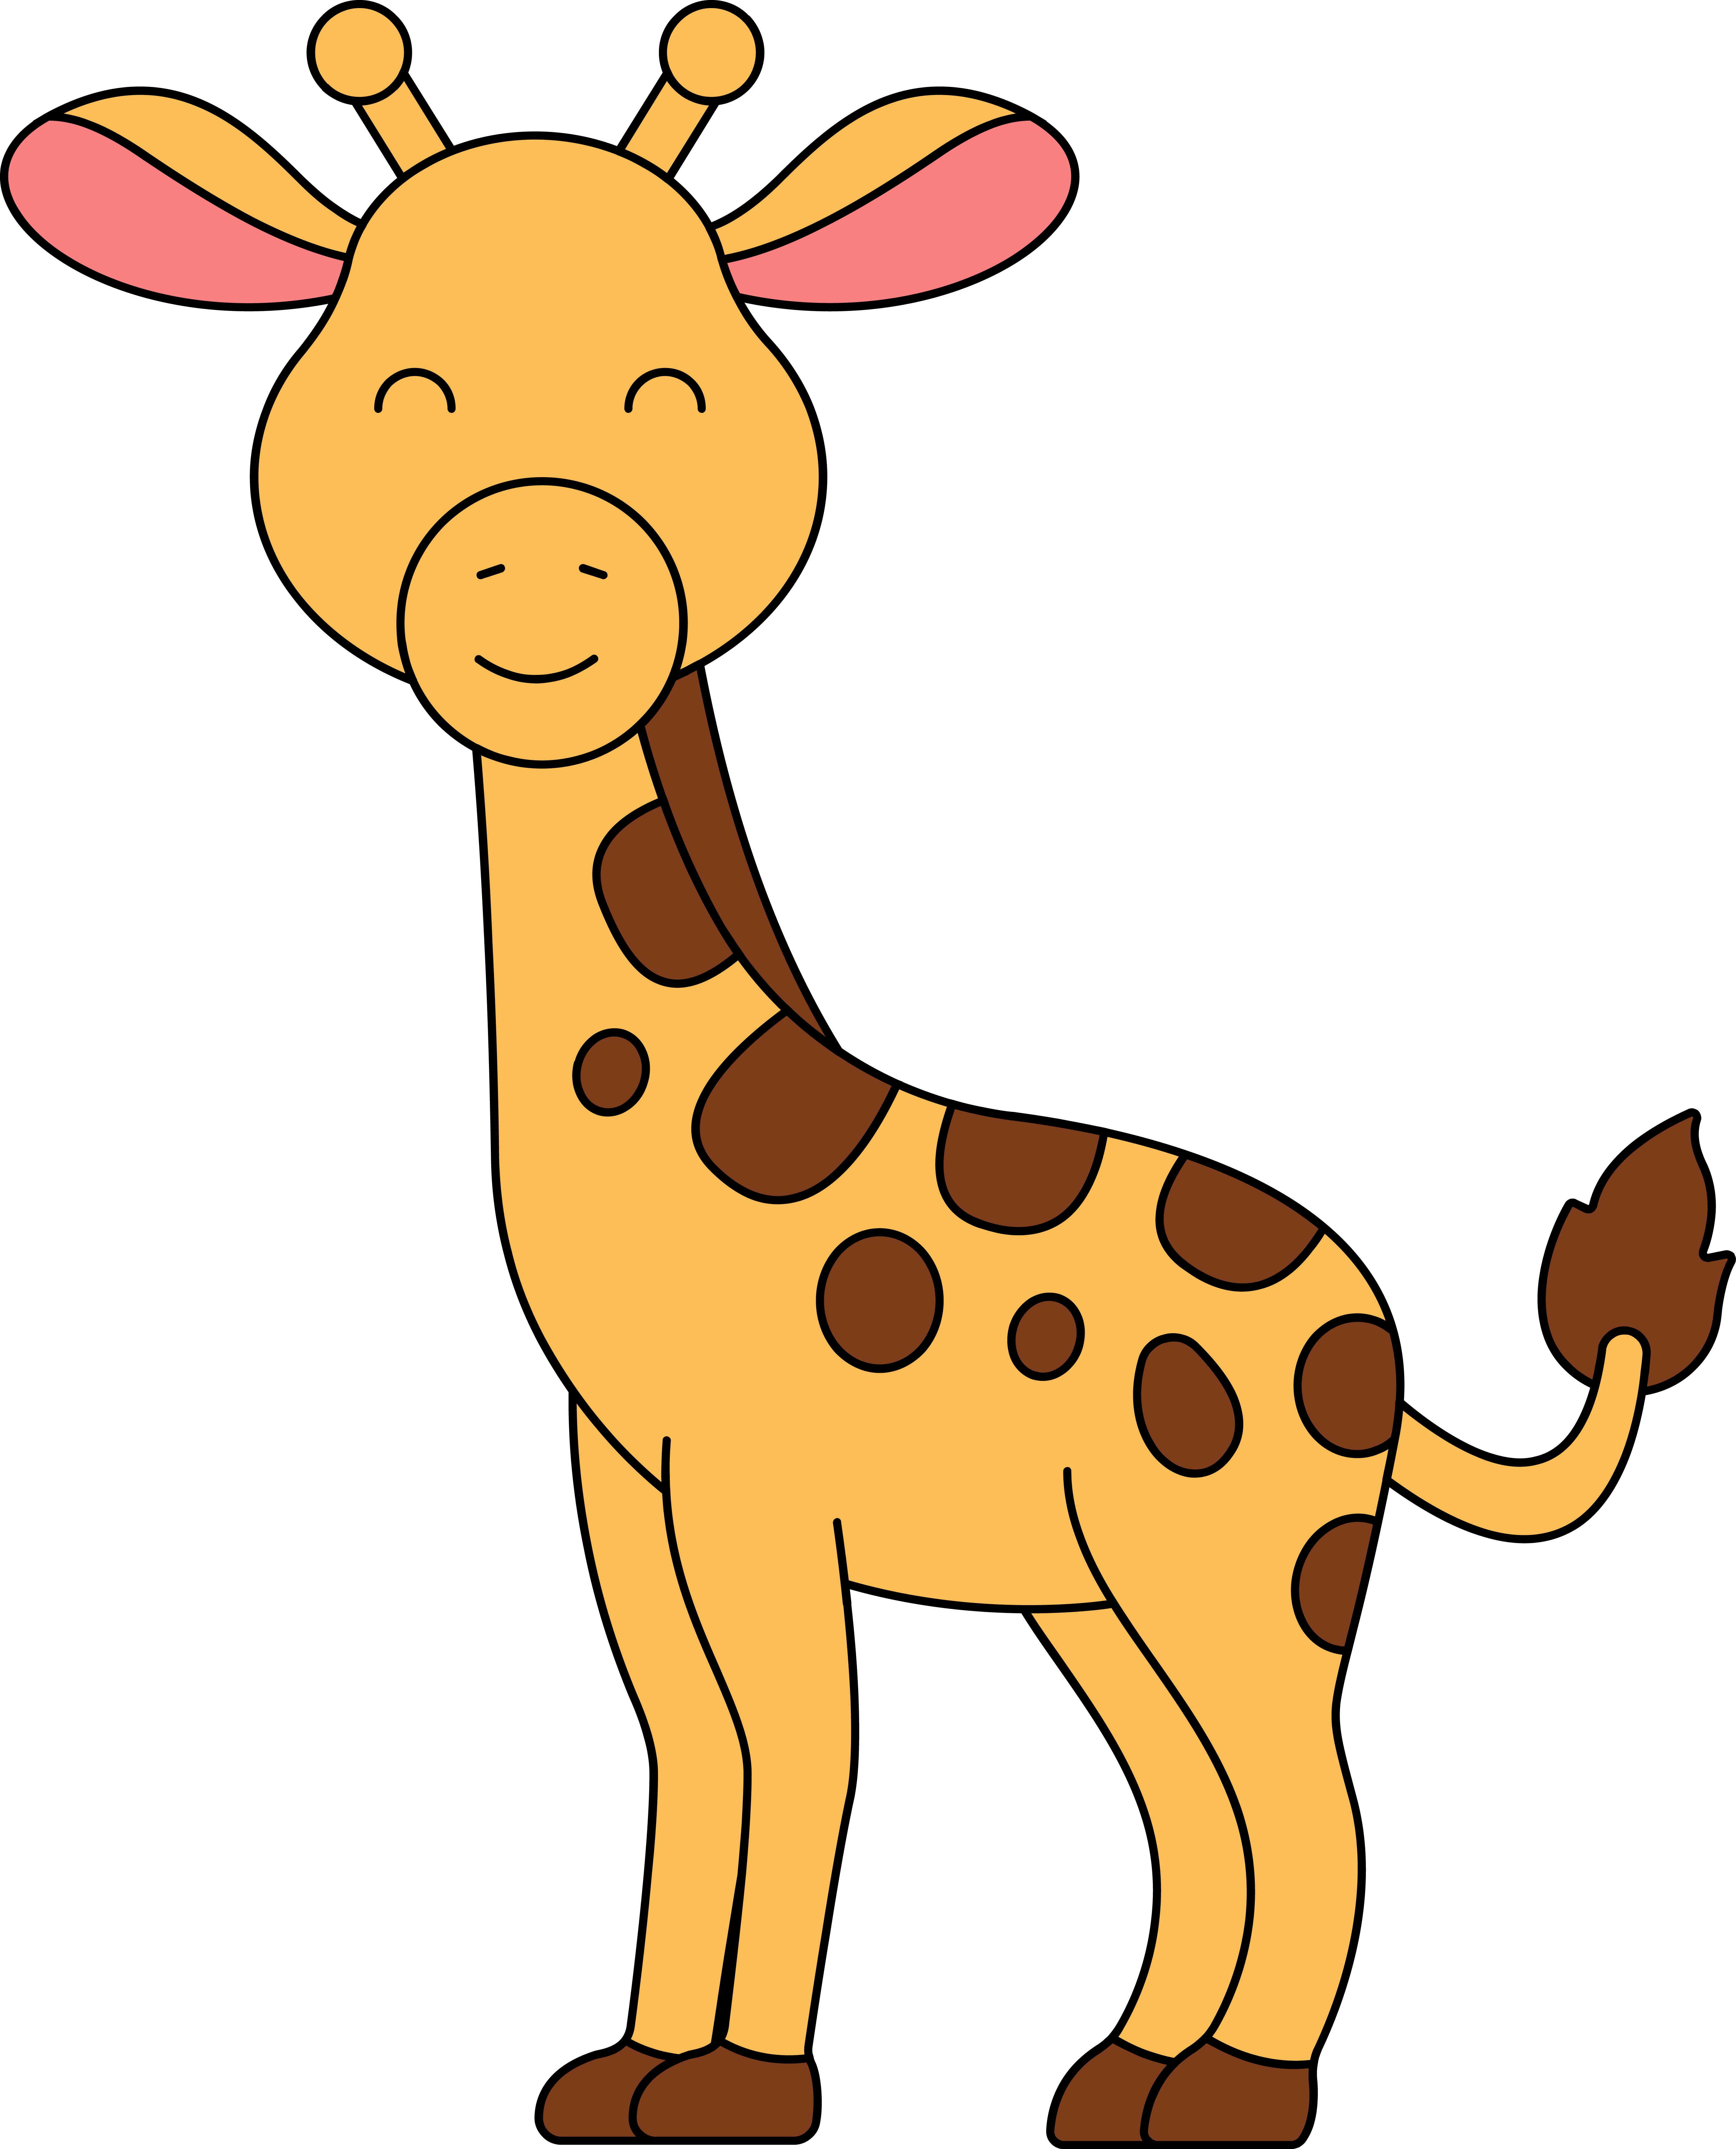 Образец раскрашенной картинки маленький жираф с закрытыми глазами